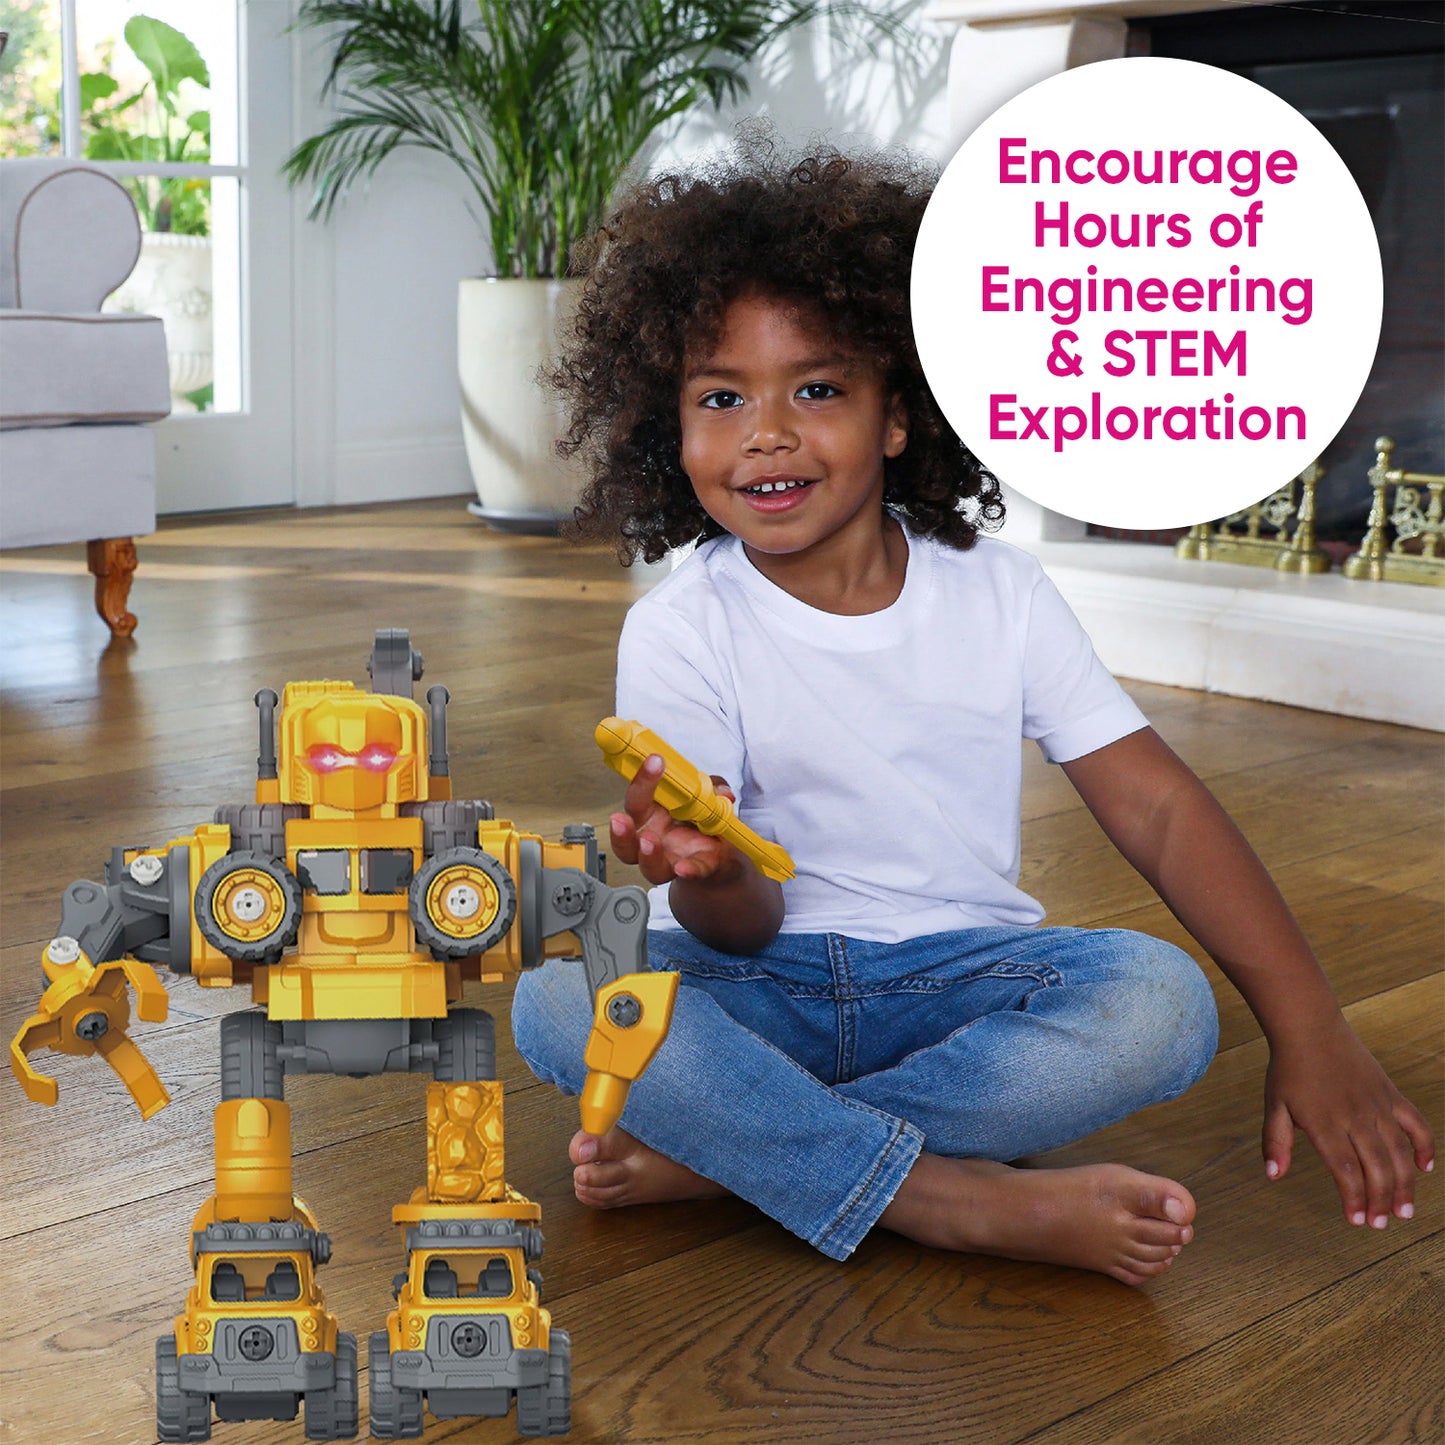 BOT ENGINEERING – Bot Engineering